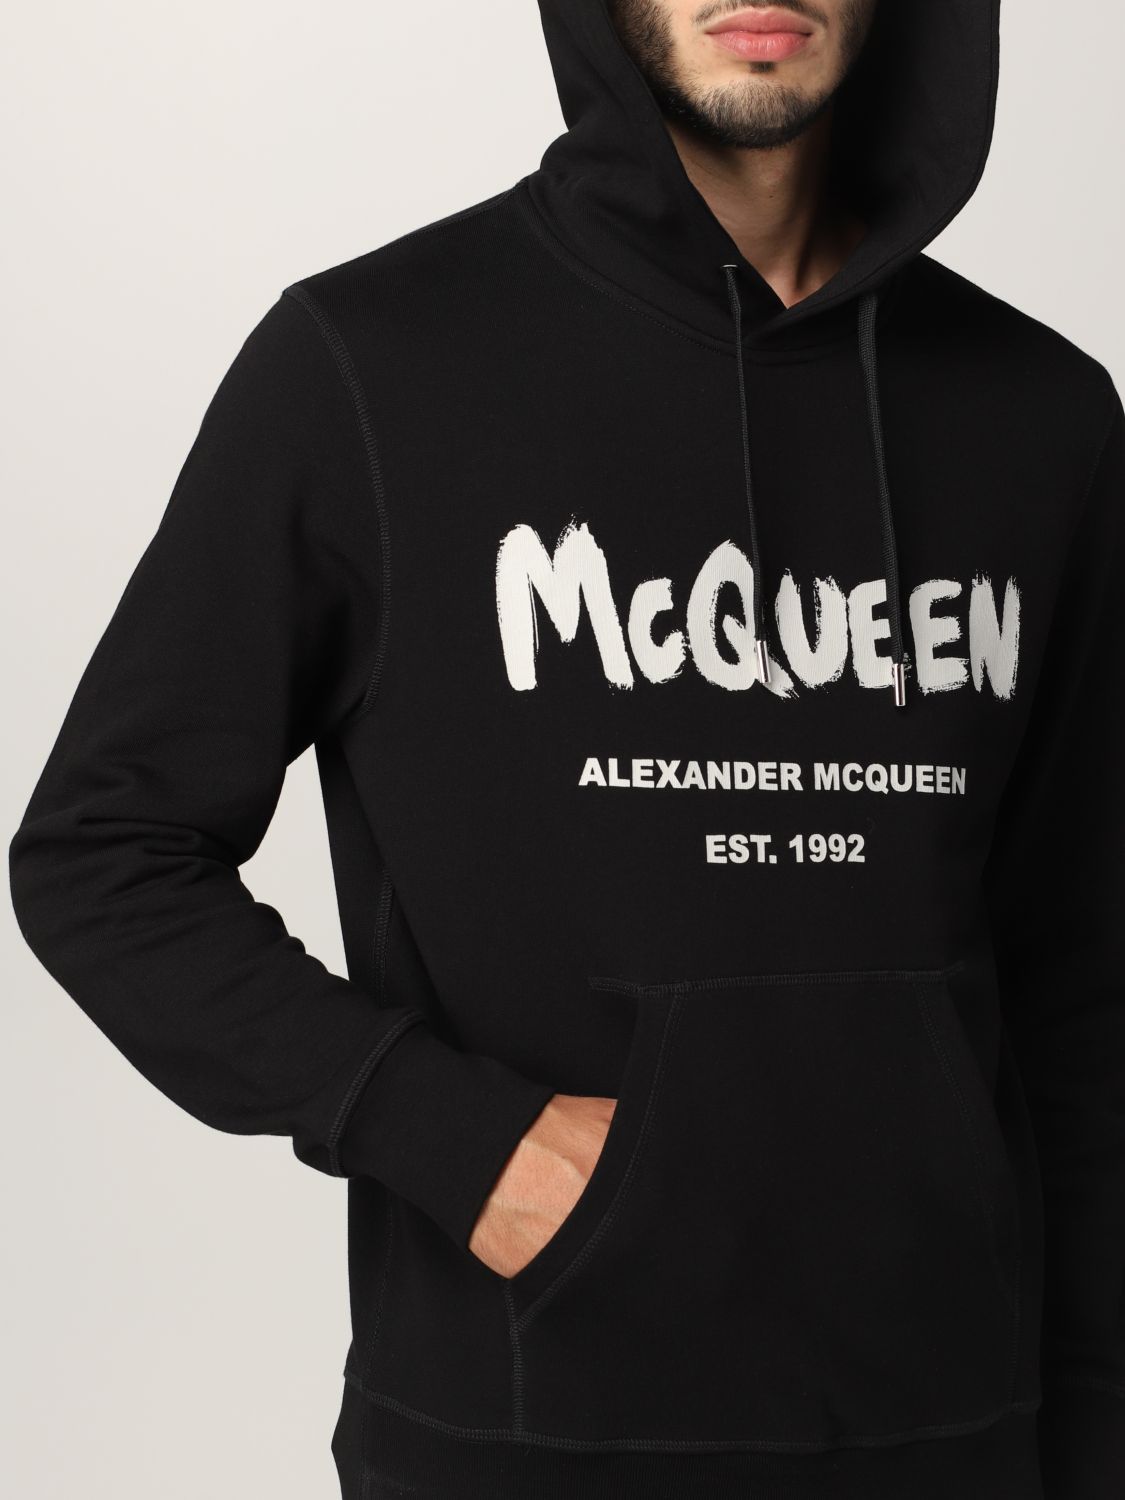 Alexander McQueen hoodie